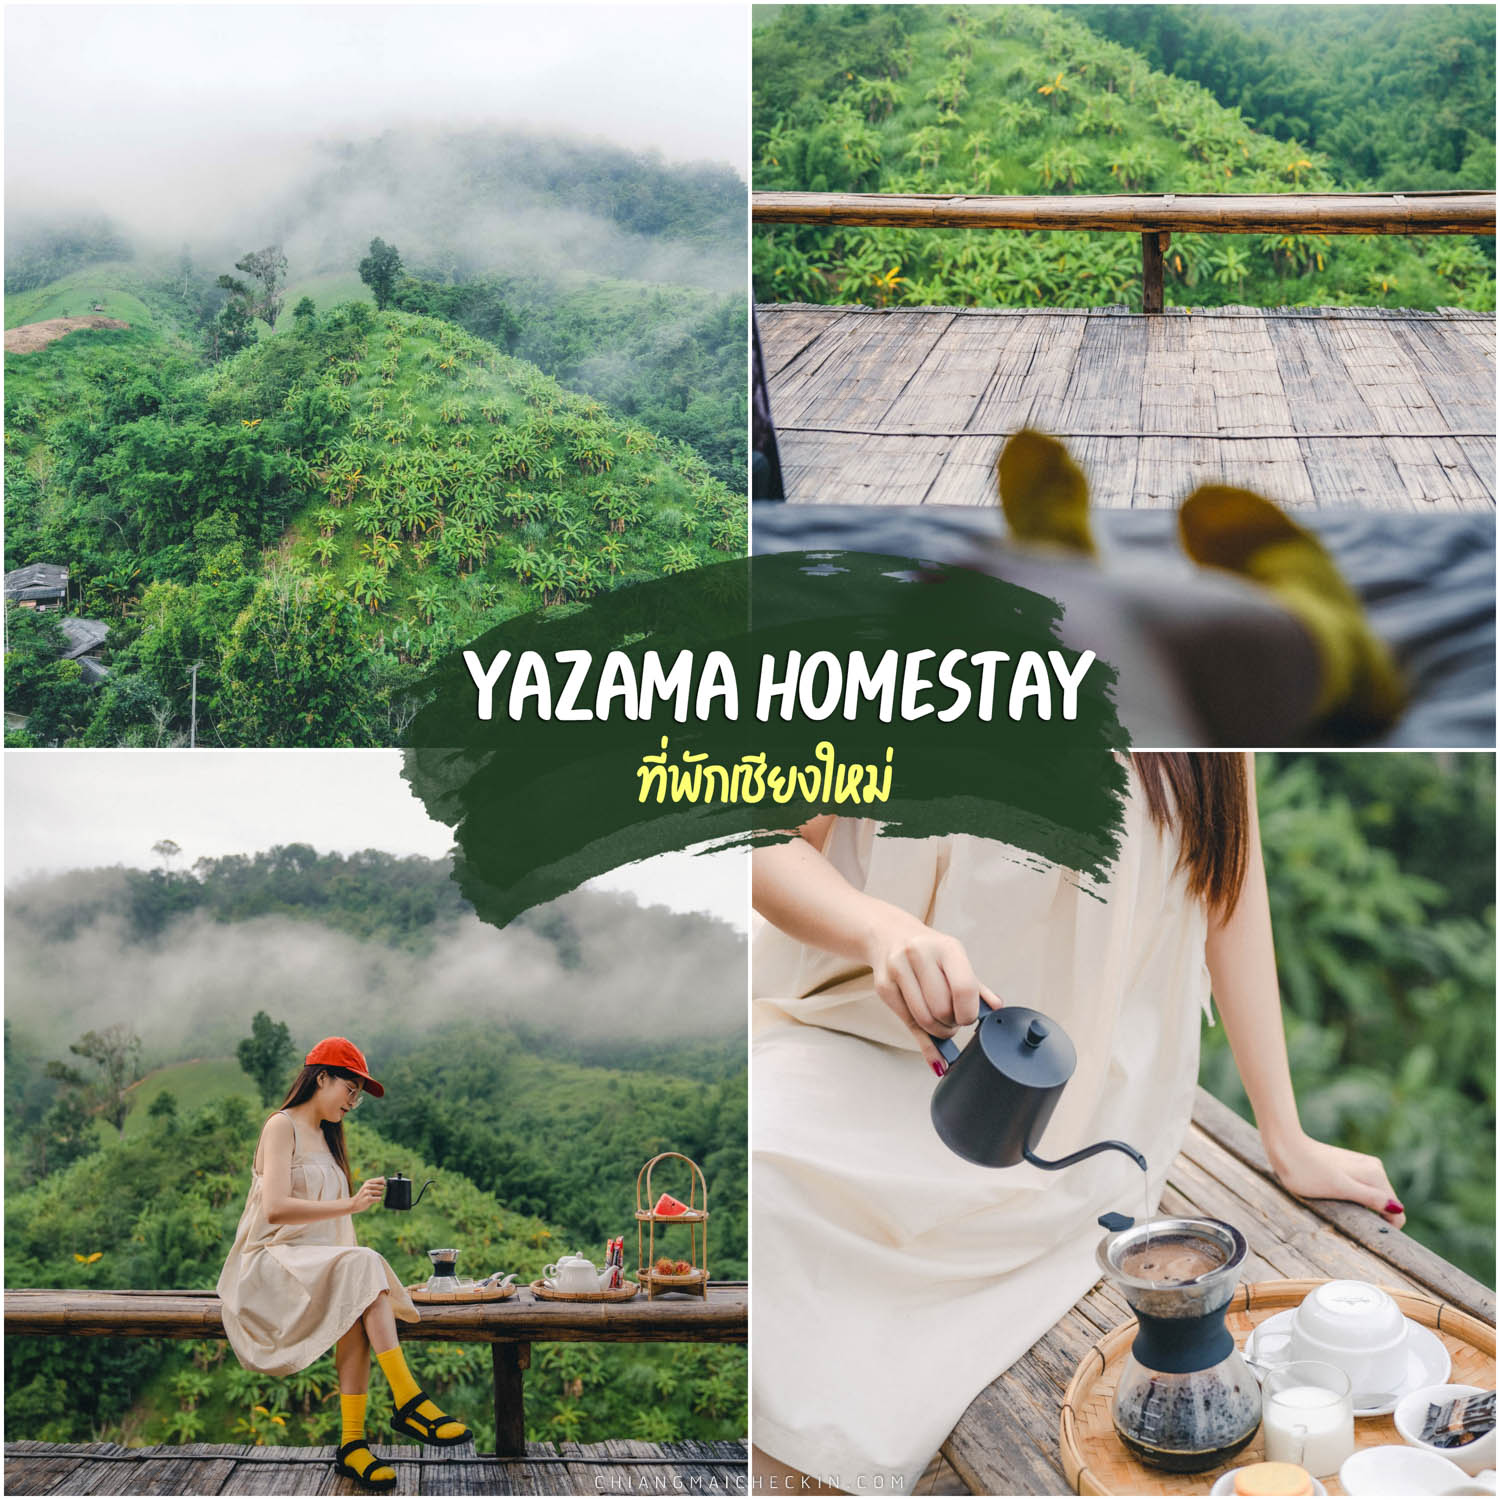 清迈亚扎玛寄宿酒店, 清迈的住宿 清凉风格的竹屋 无与伦比的价值百万美元的景观 喝茶很满足。